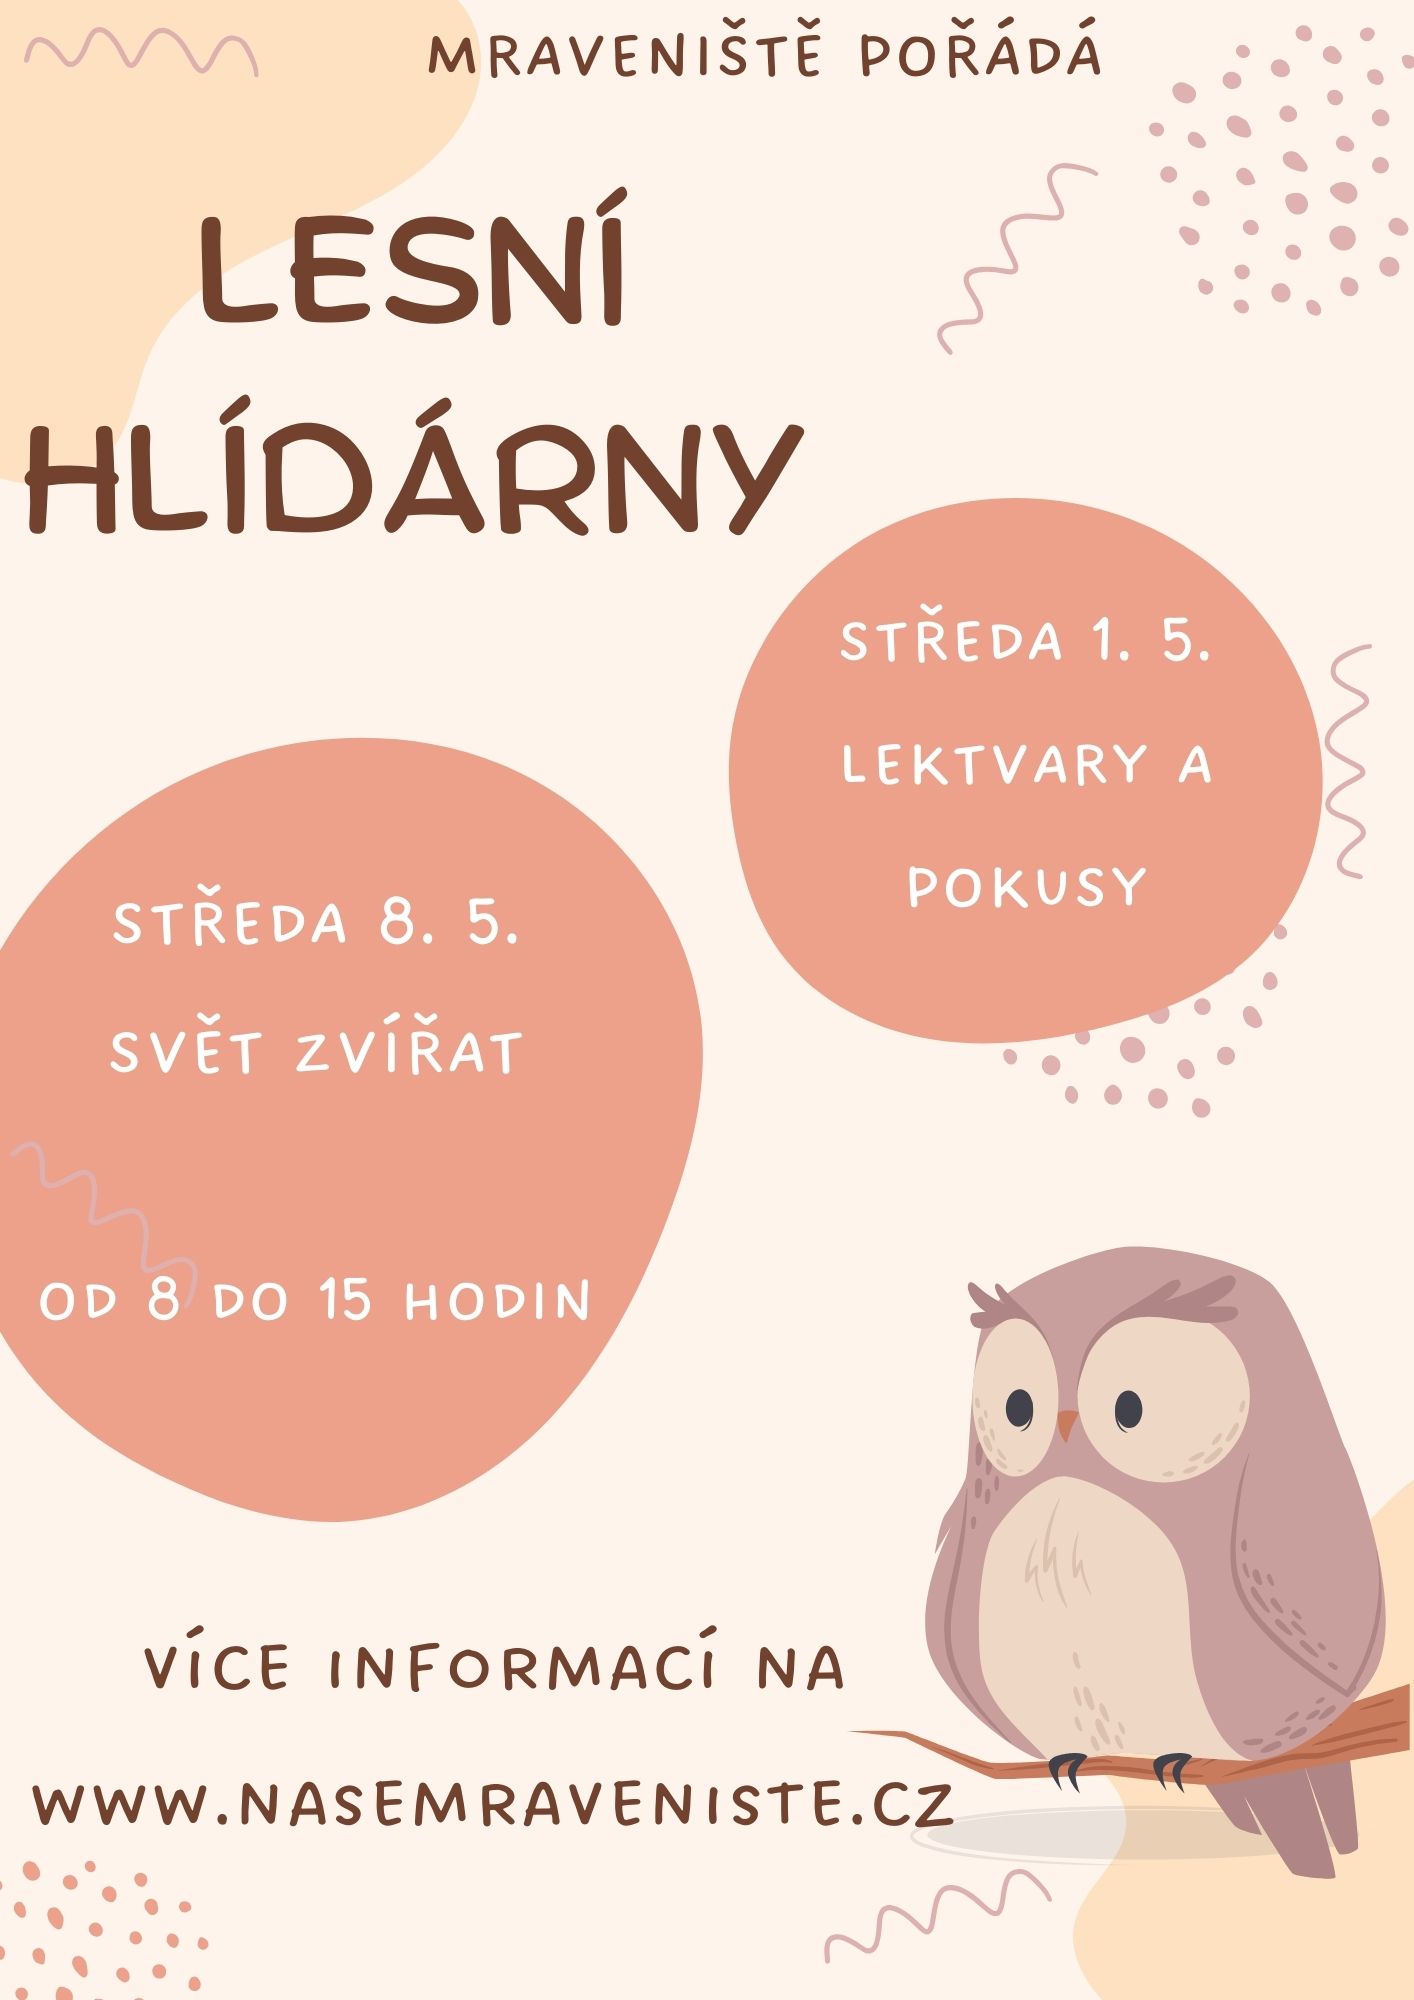 Featured image for “Lesní hlídárny”